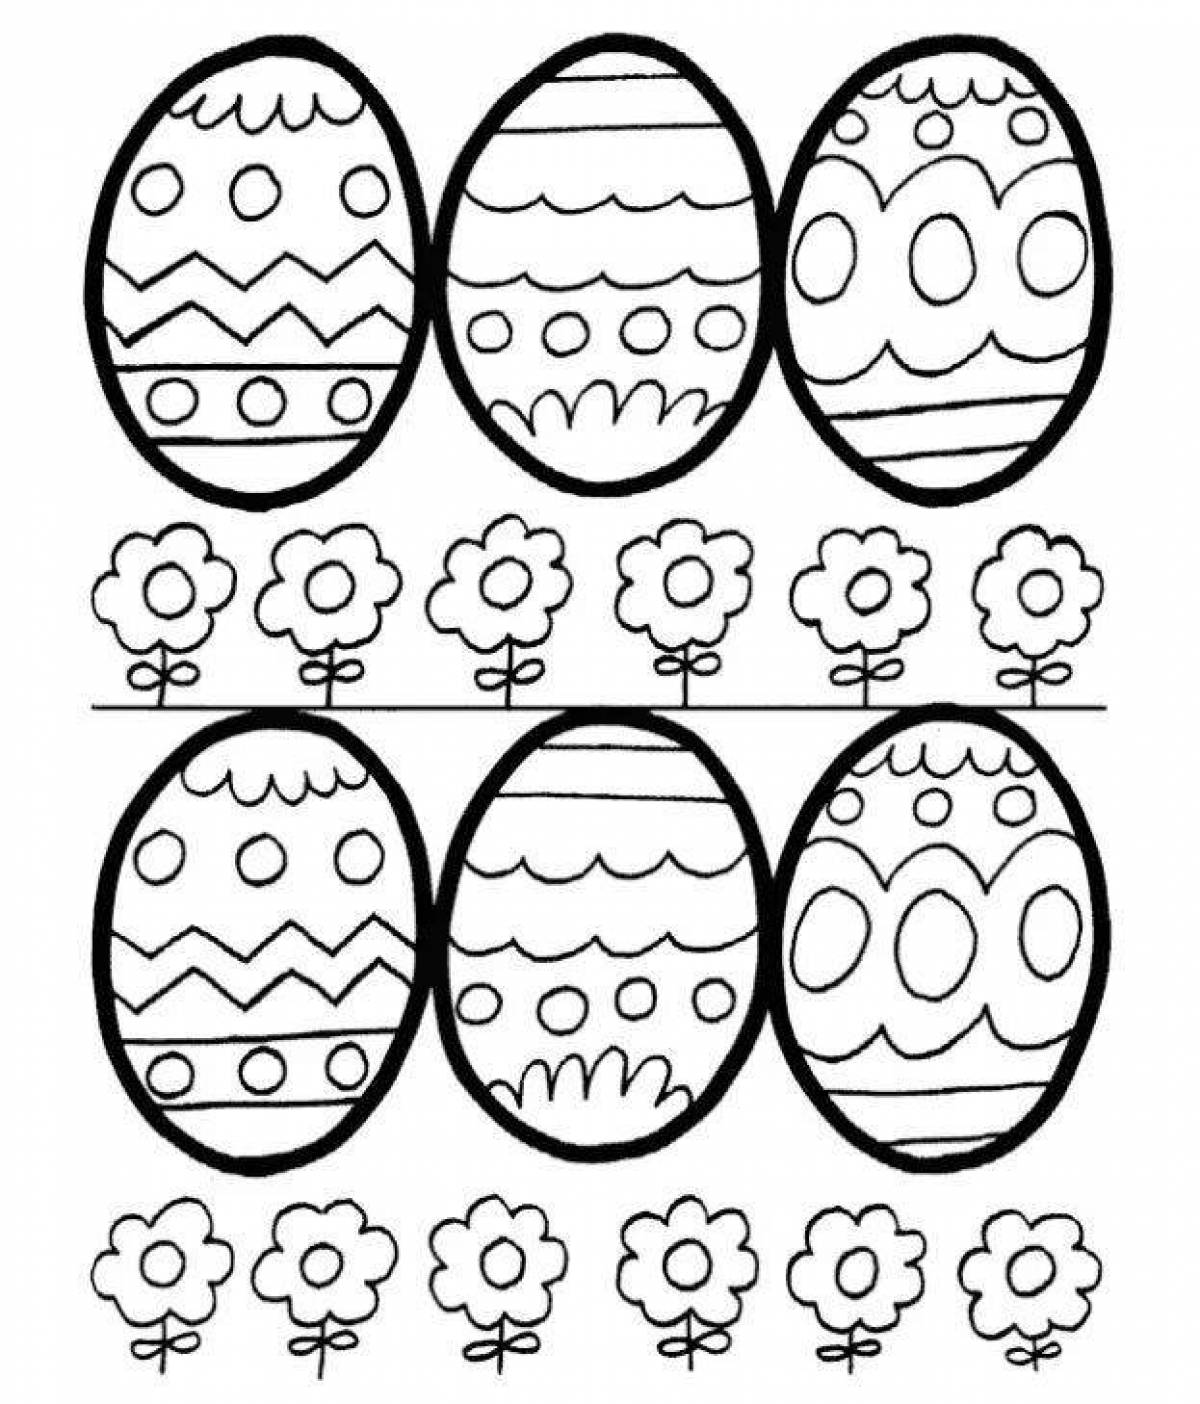 Яйцо шаблон для детей. Яйцо пасхальное разукрашка для малышей. Раскраски яйца на Пасху для детей. Трафареты яиц для раскрашивания. Раскраски пасочных яиц.